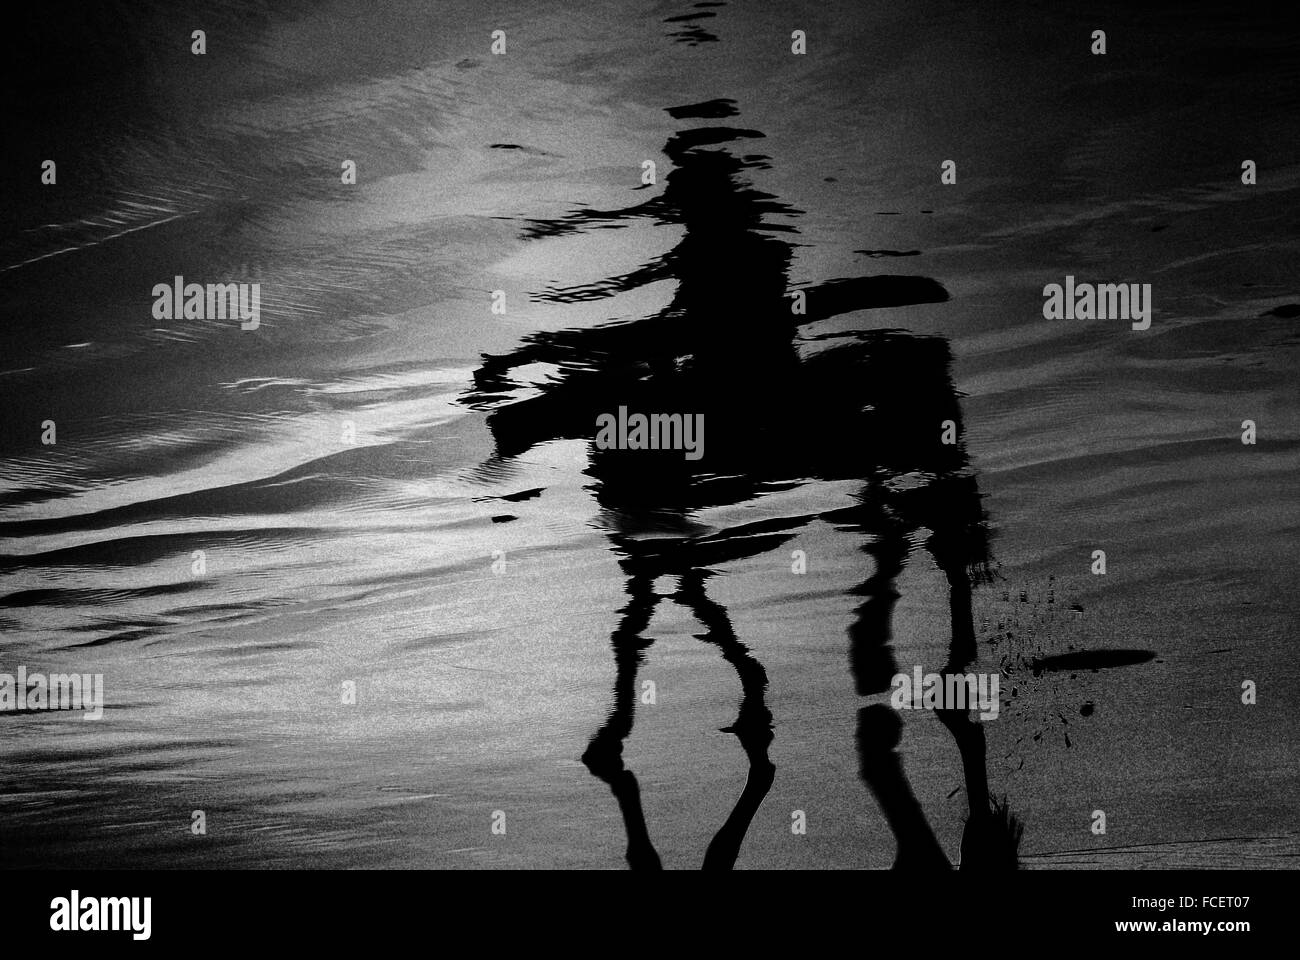 La reflexión de la persona en el montar a caballo en la playa Foto de stock